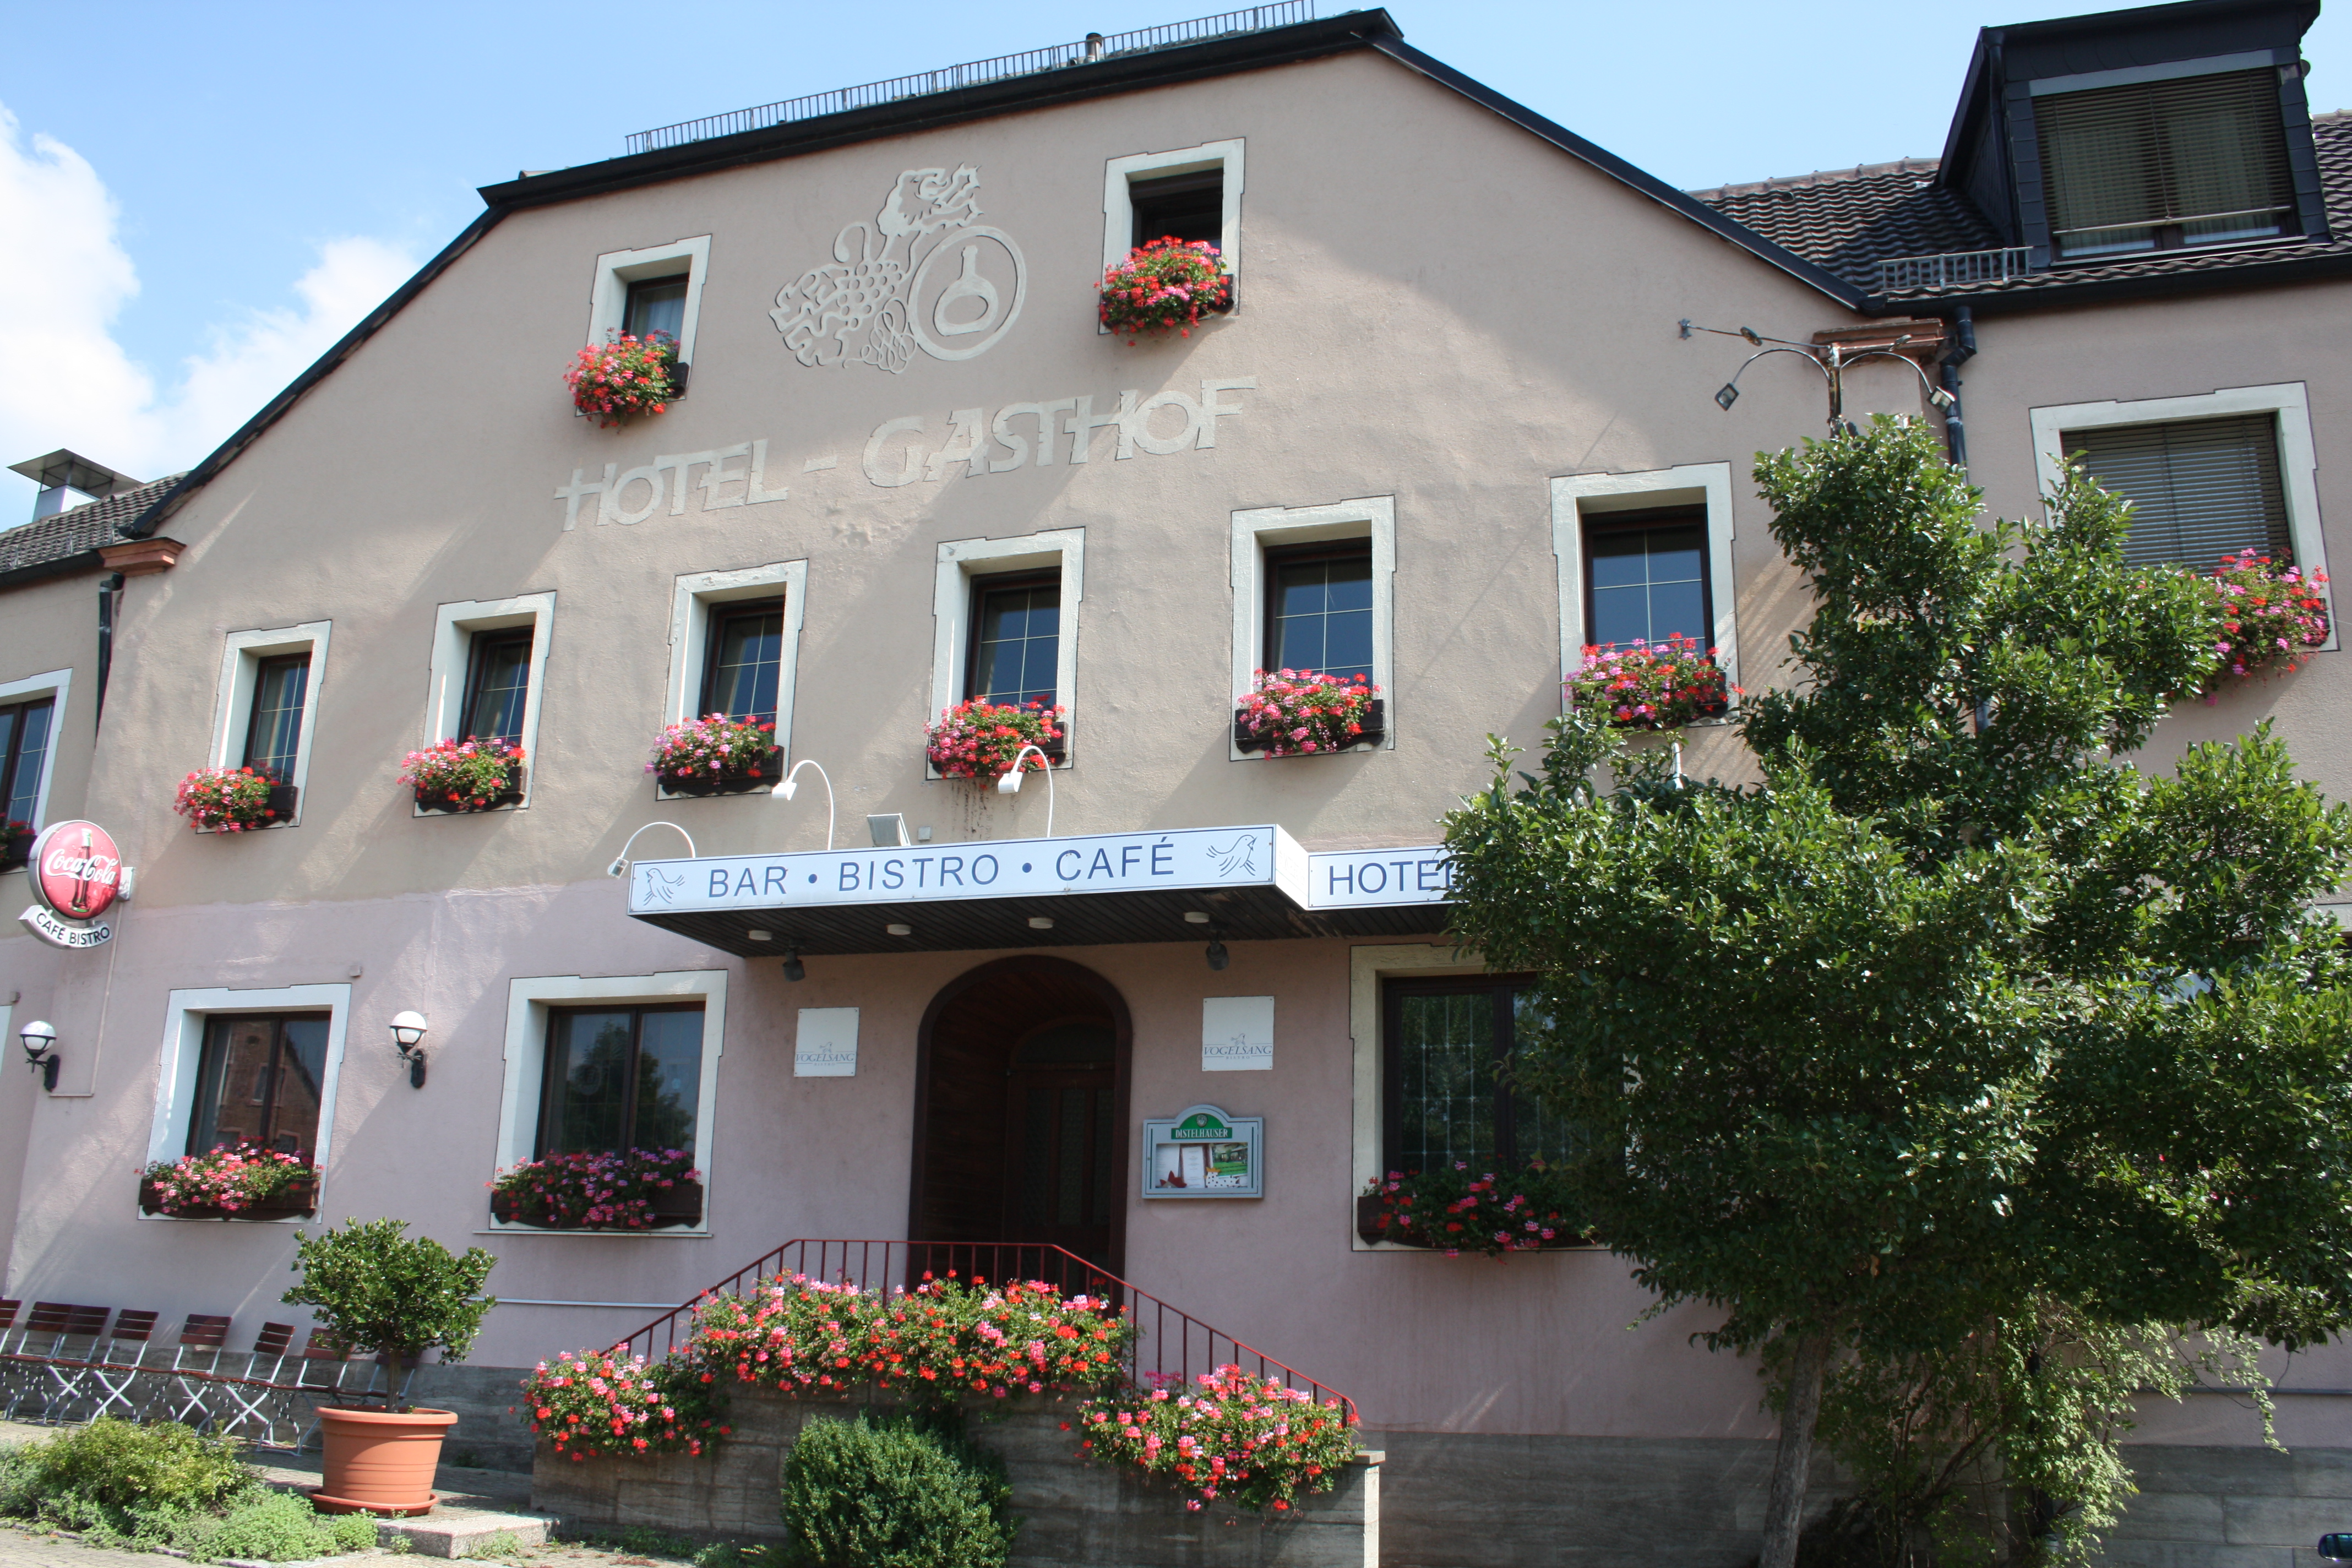 Hotel Vogelsang, Zellingen - Ortsteil Retzbach.